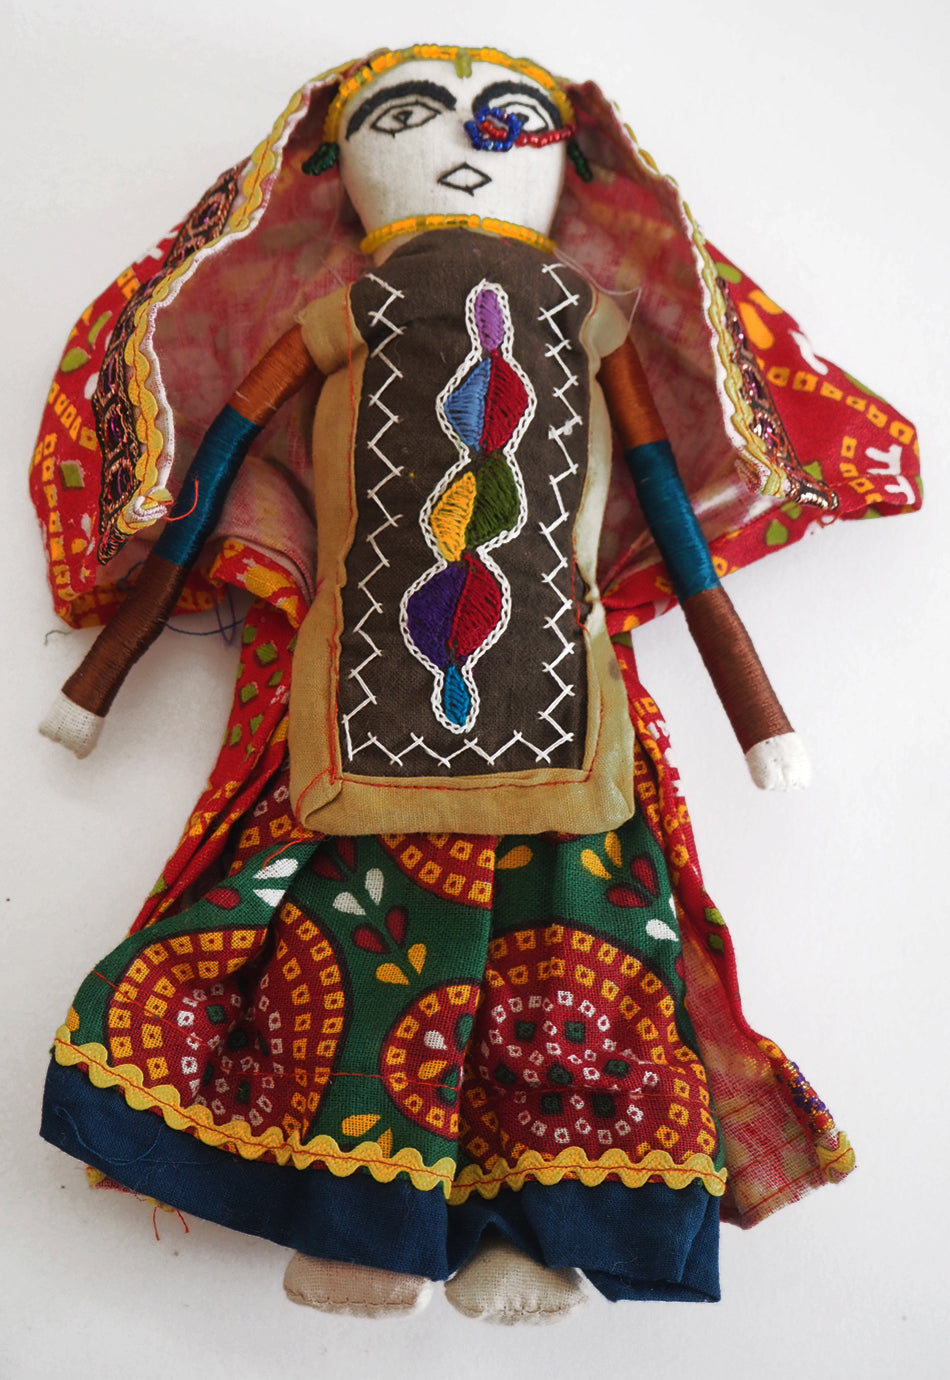 Handmade rag dolls from Hodka village